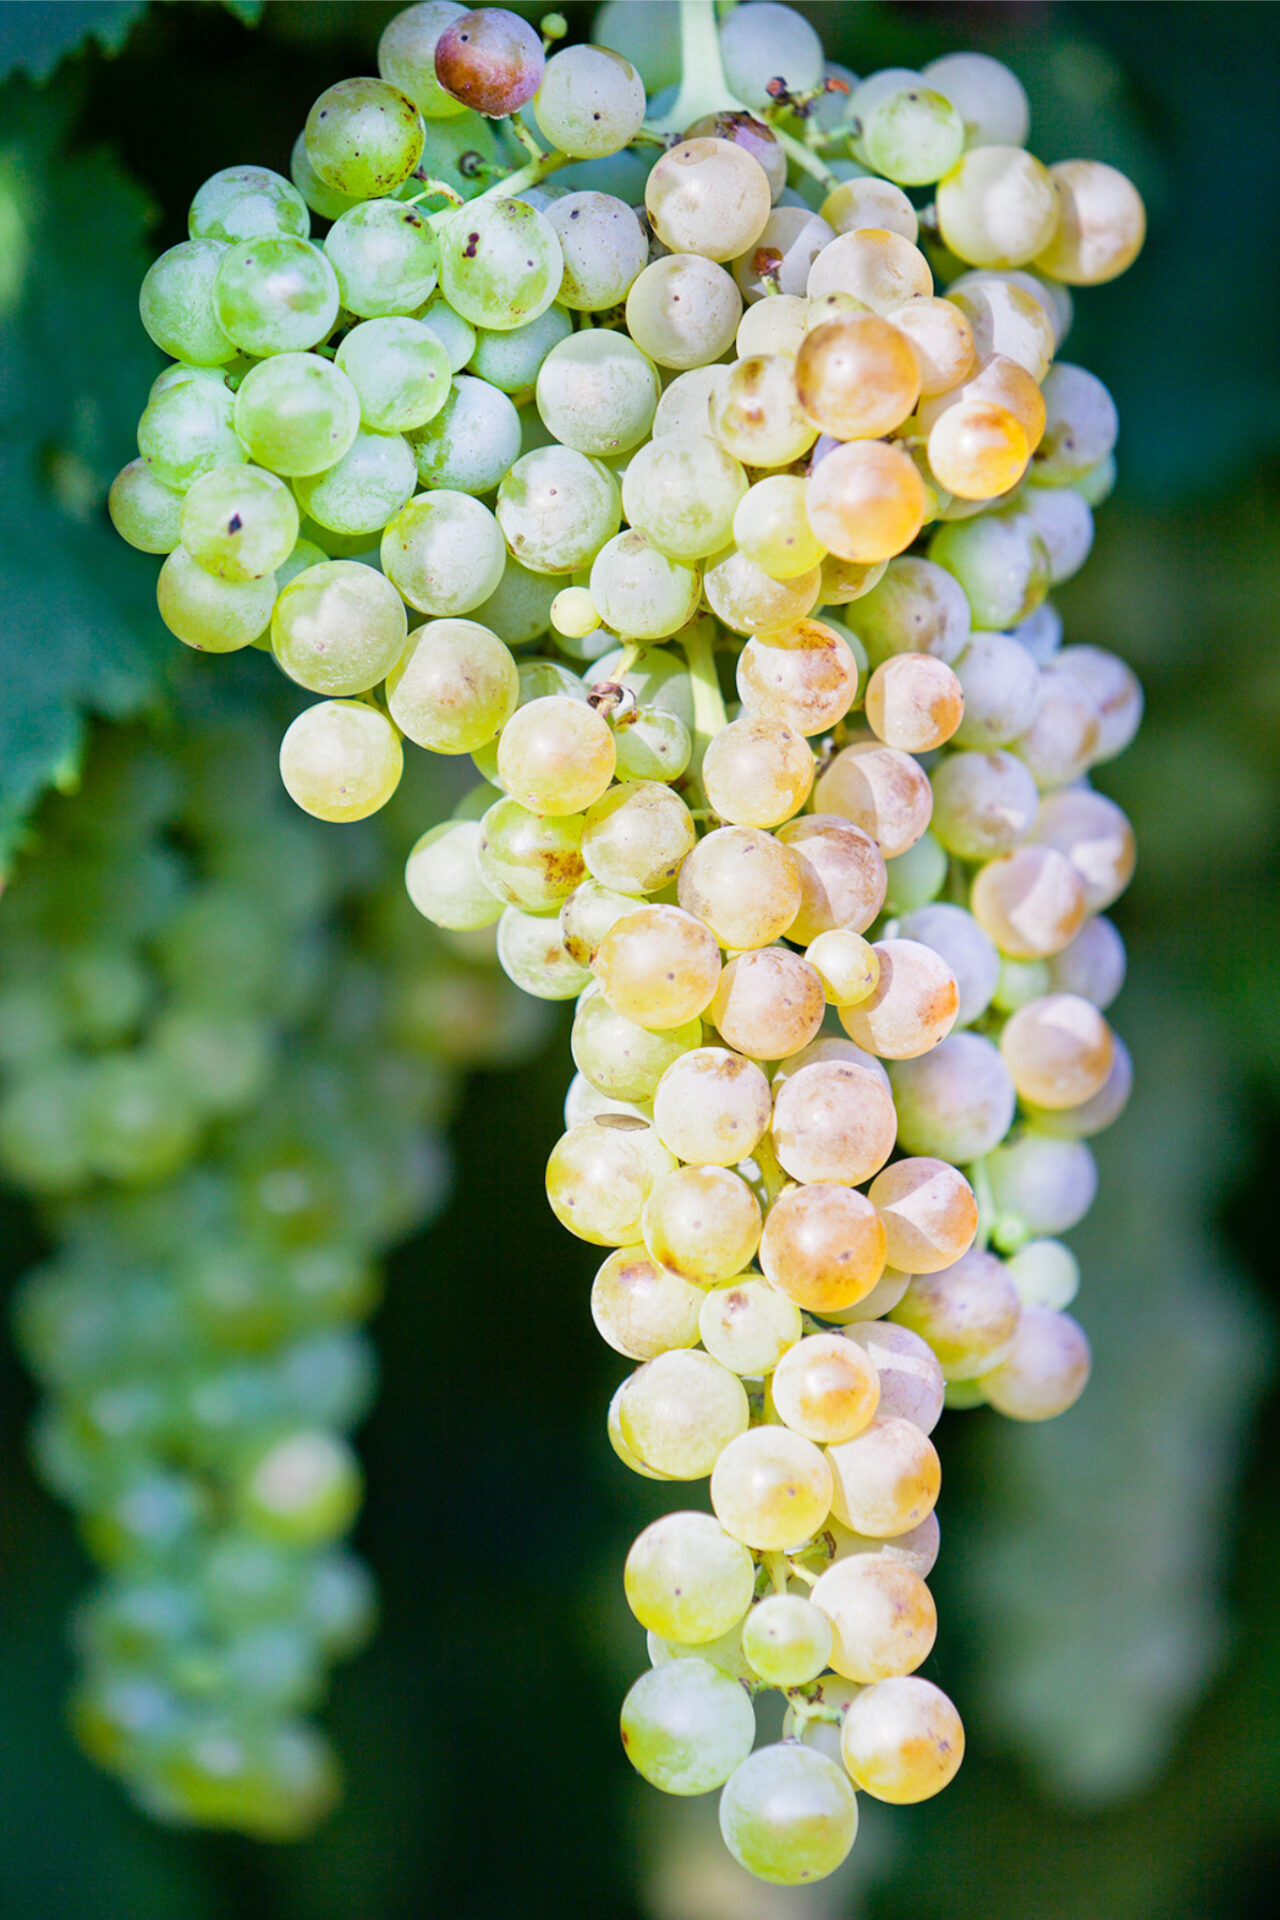 Garganega grapes hanging on vine